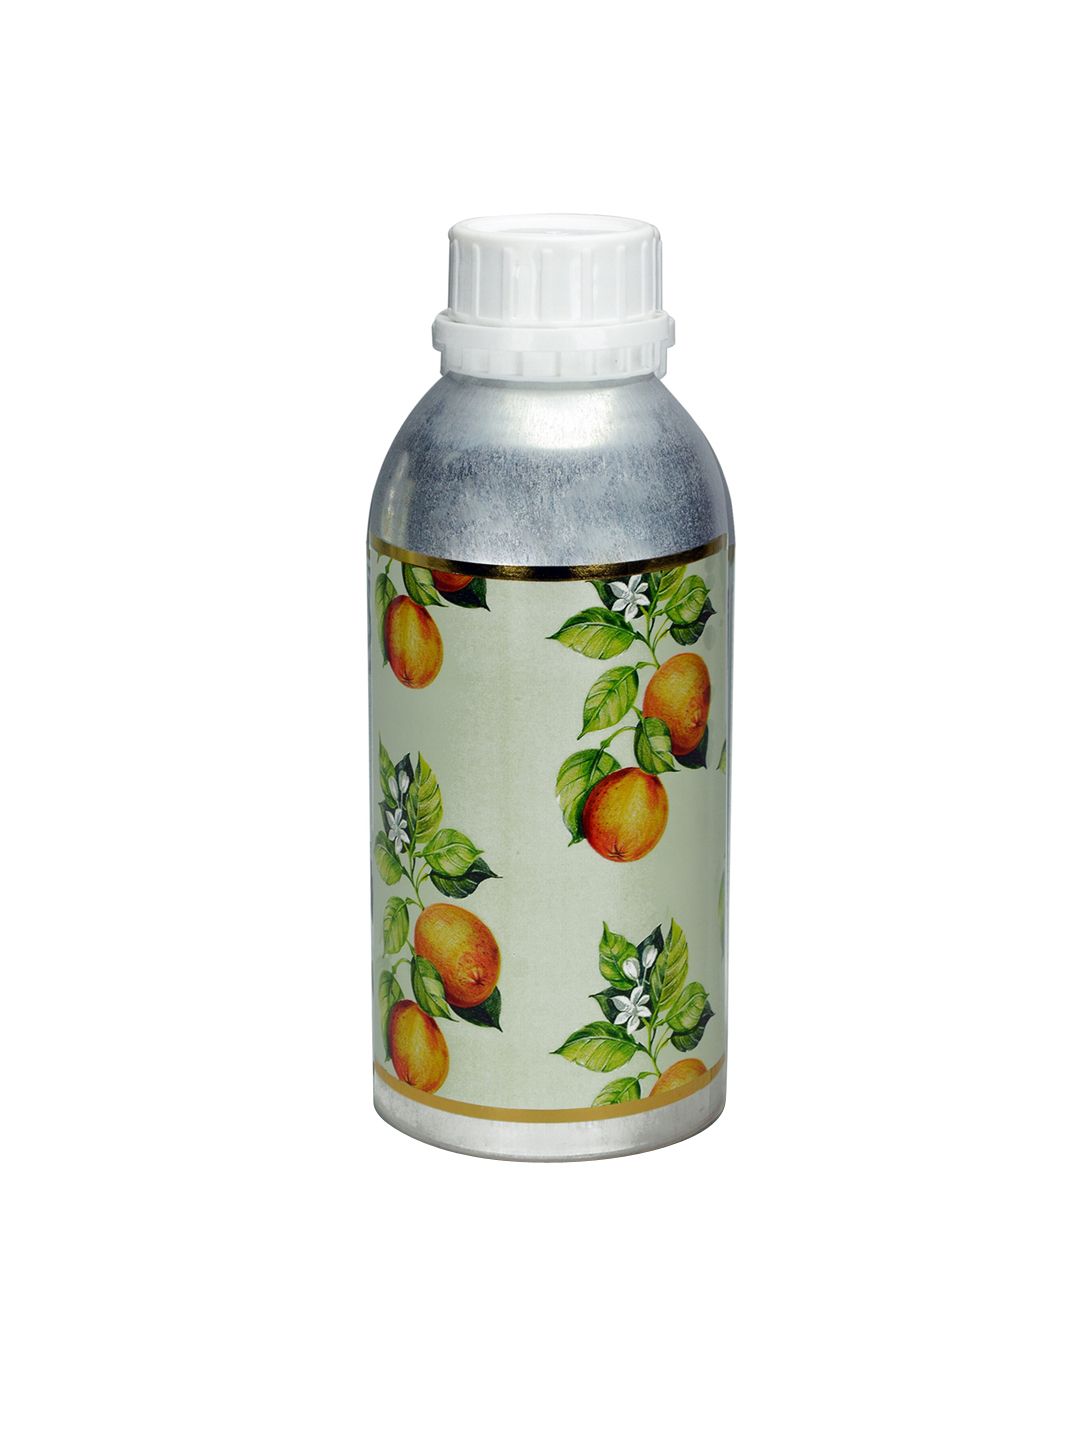 Iris Unisex Orange Aroma Oil Diffusers Price in India